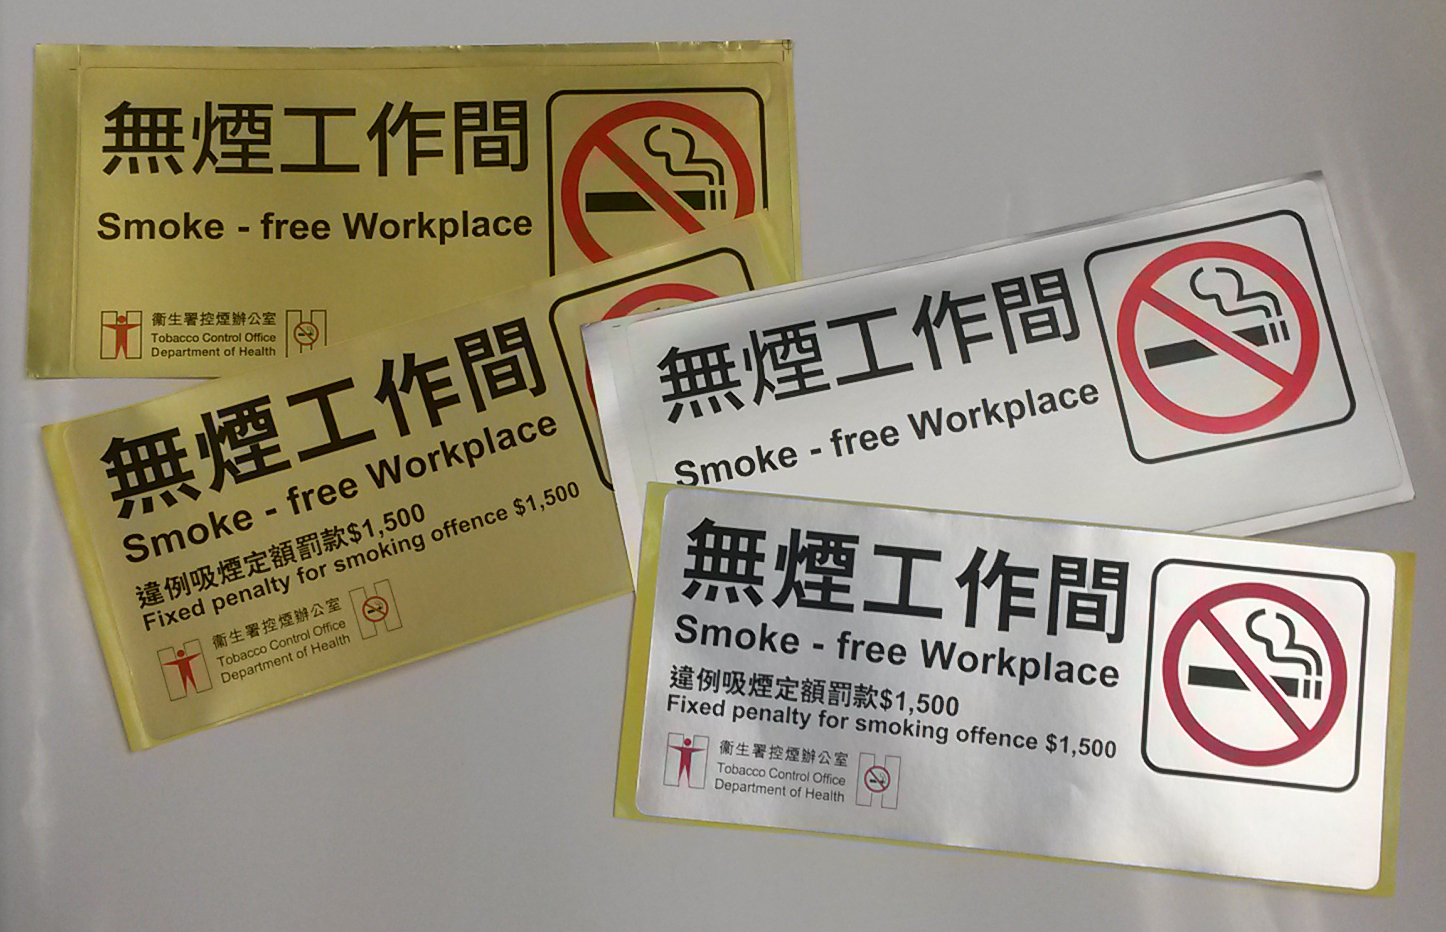 Smoke-free Workplace